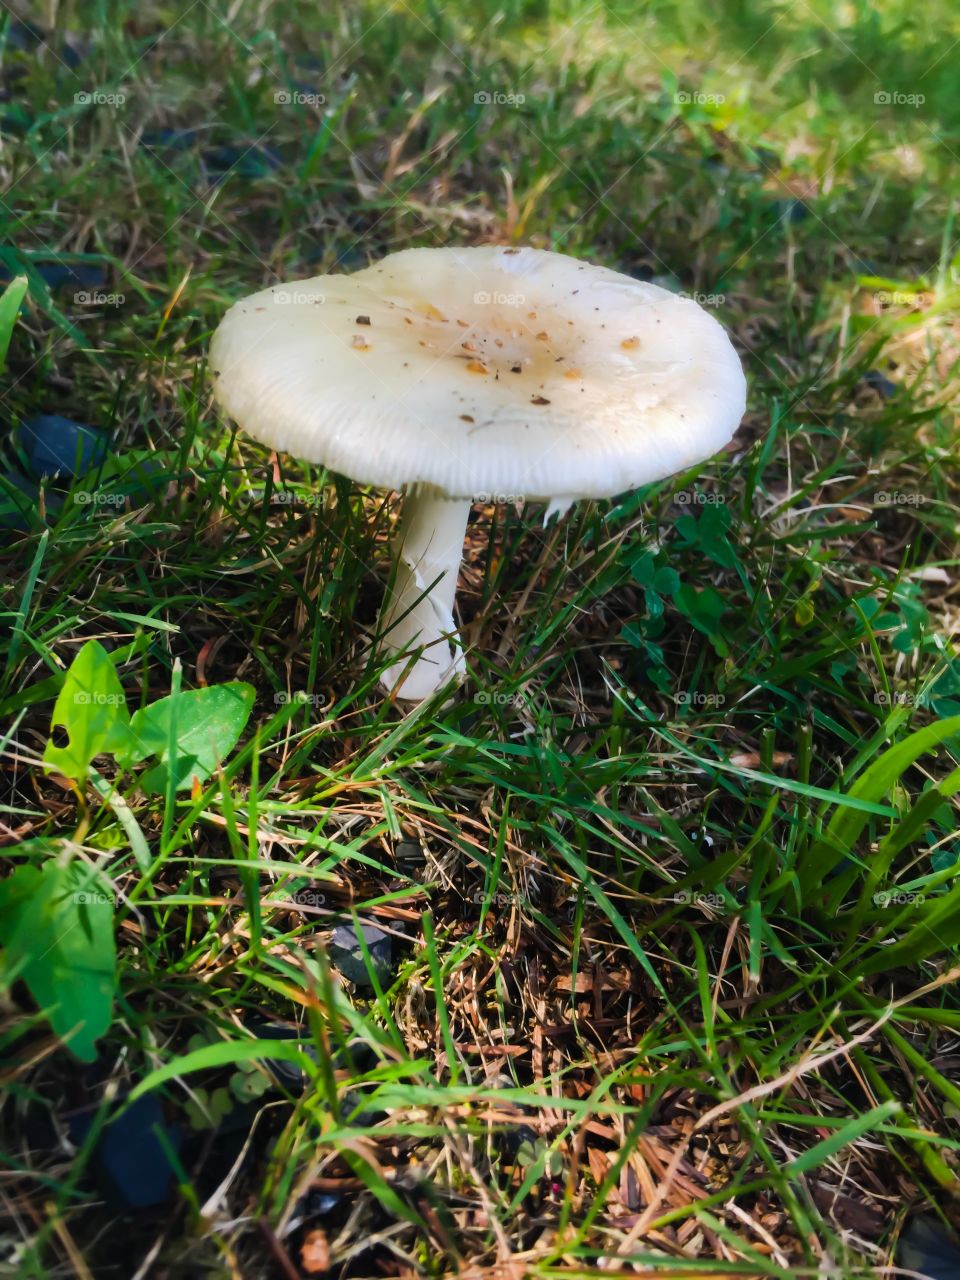 Mushroom 🍄 land